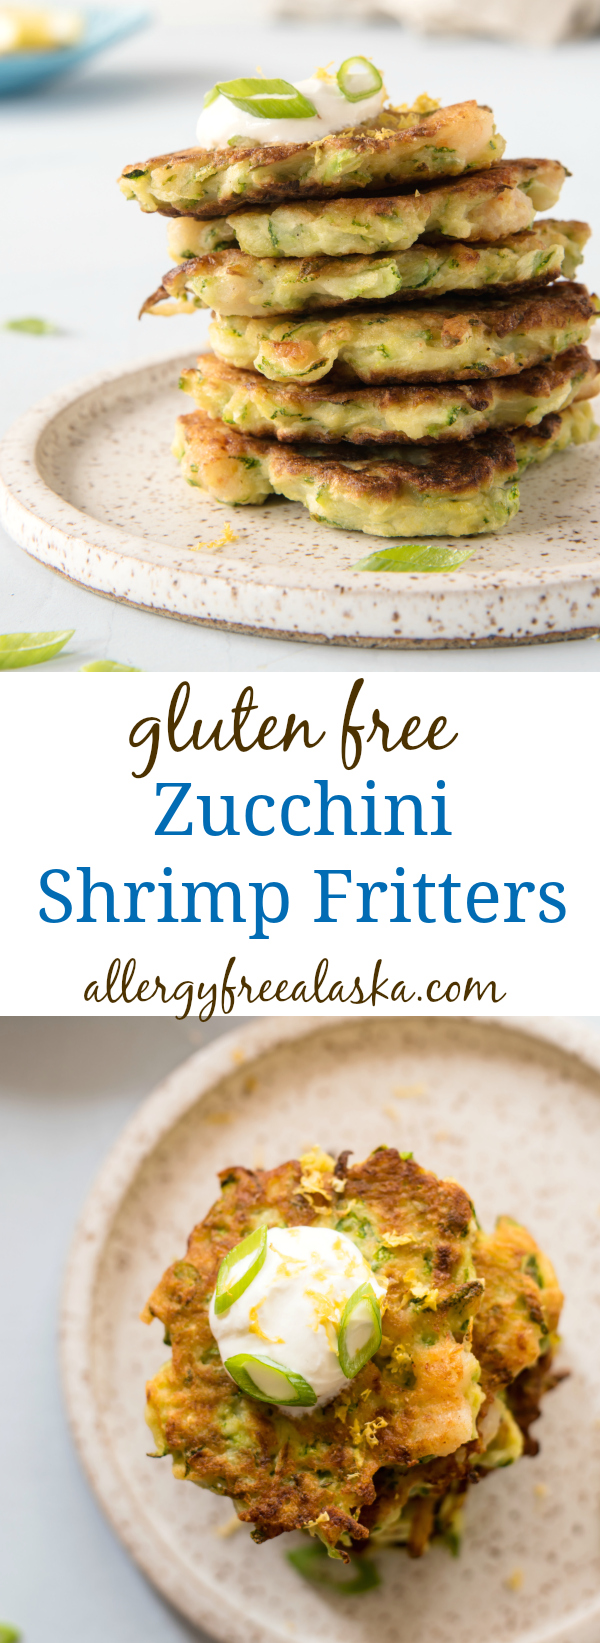 gluten free zucchini shrimp fritters recipe